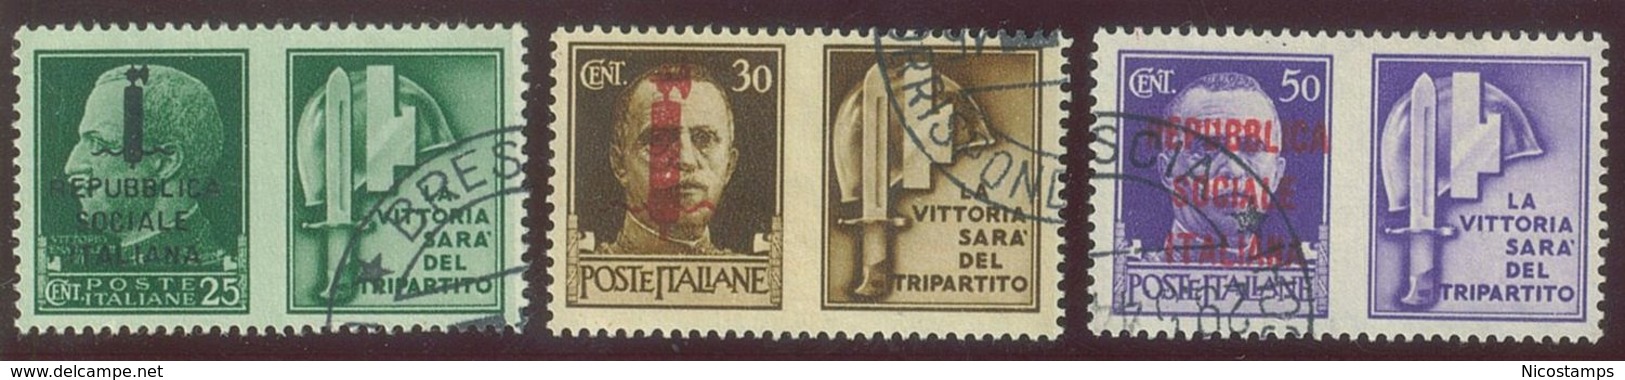 ITALIA REPUBBLICA SOCIALE ITALIANA (R.S.I.) SASS. P.G. 25 - 36 USATI - Propagande De Guerre